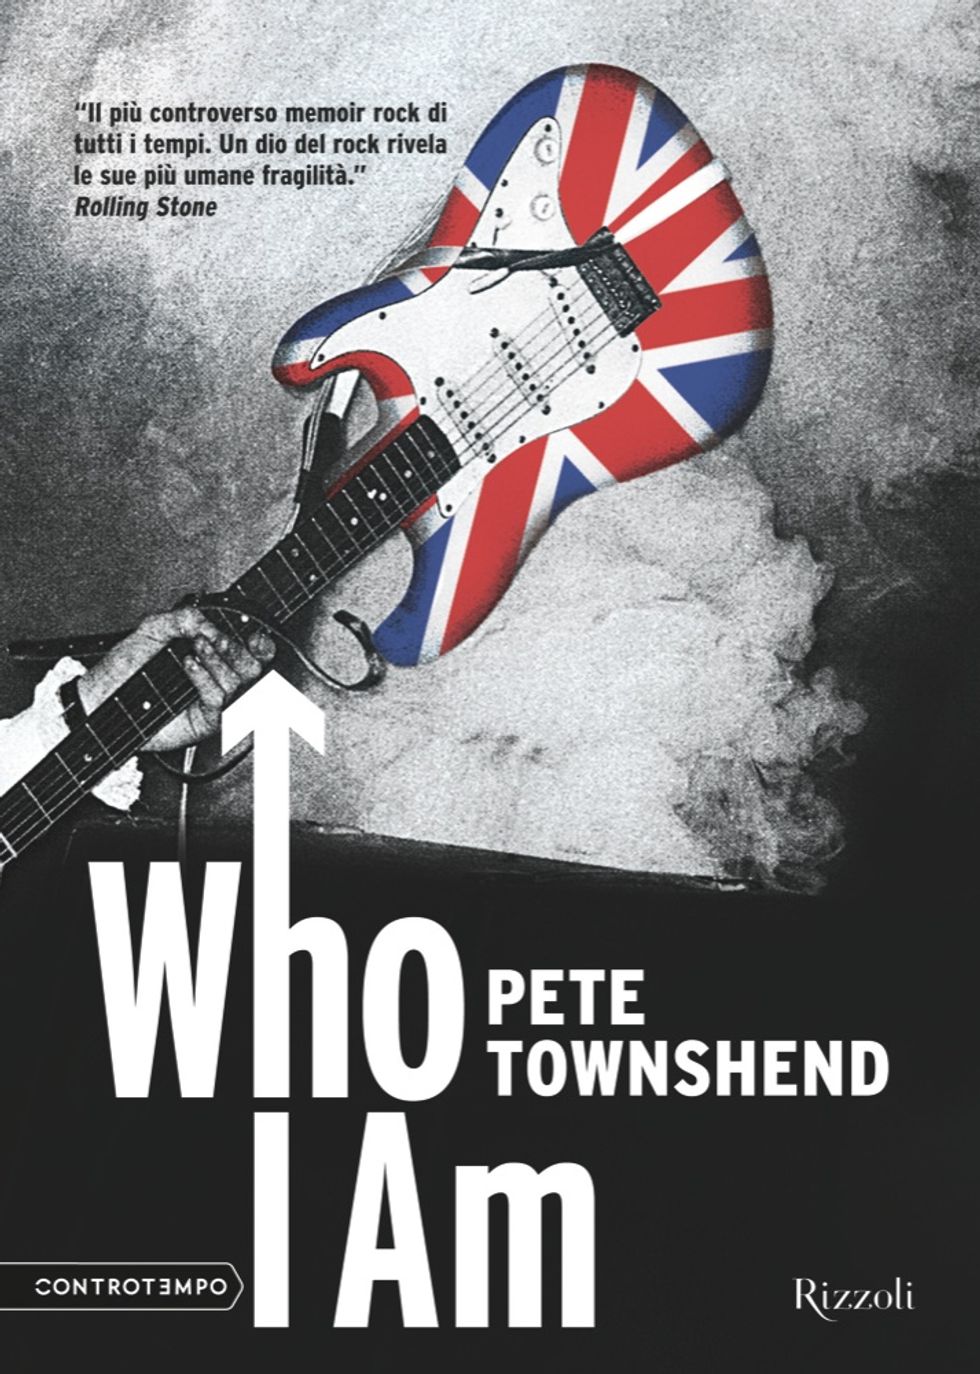 Pete Townshend, quella accusa infondata di pedopornografia